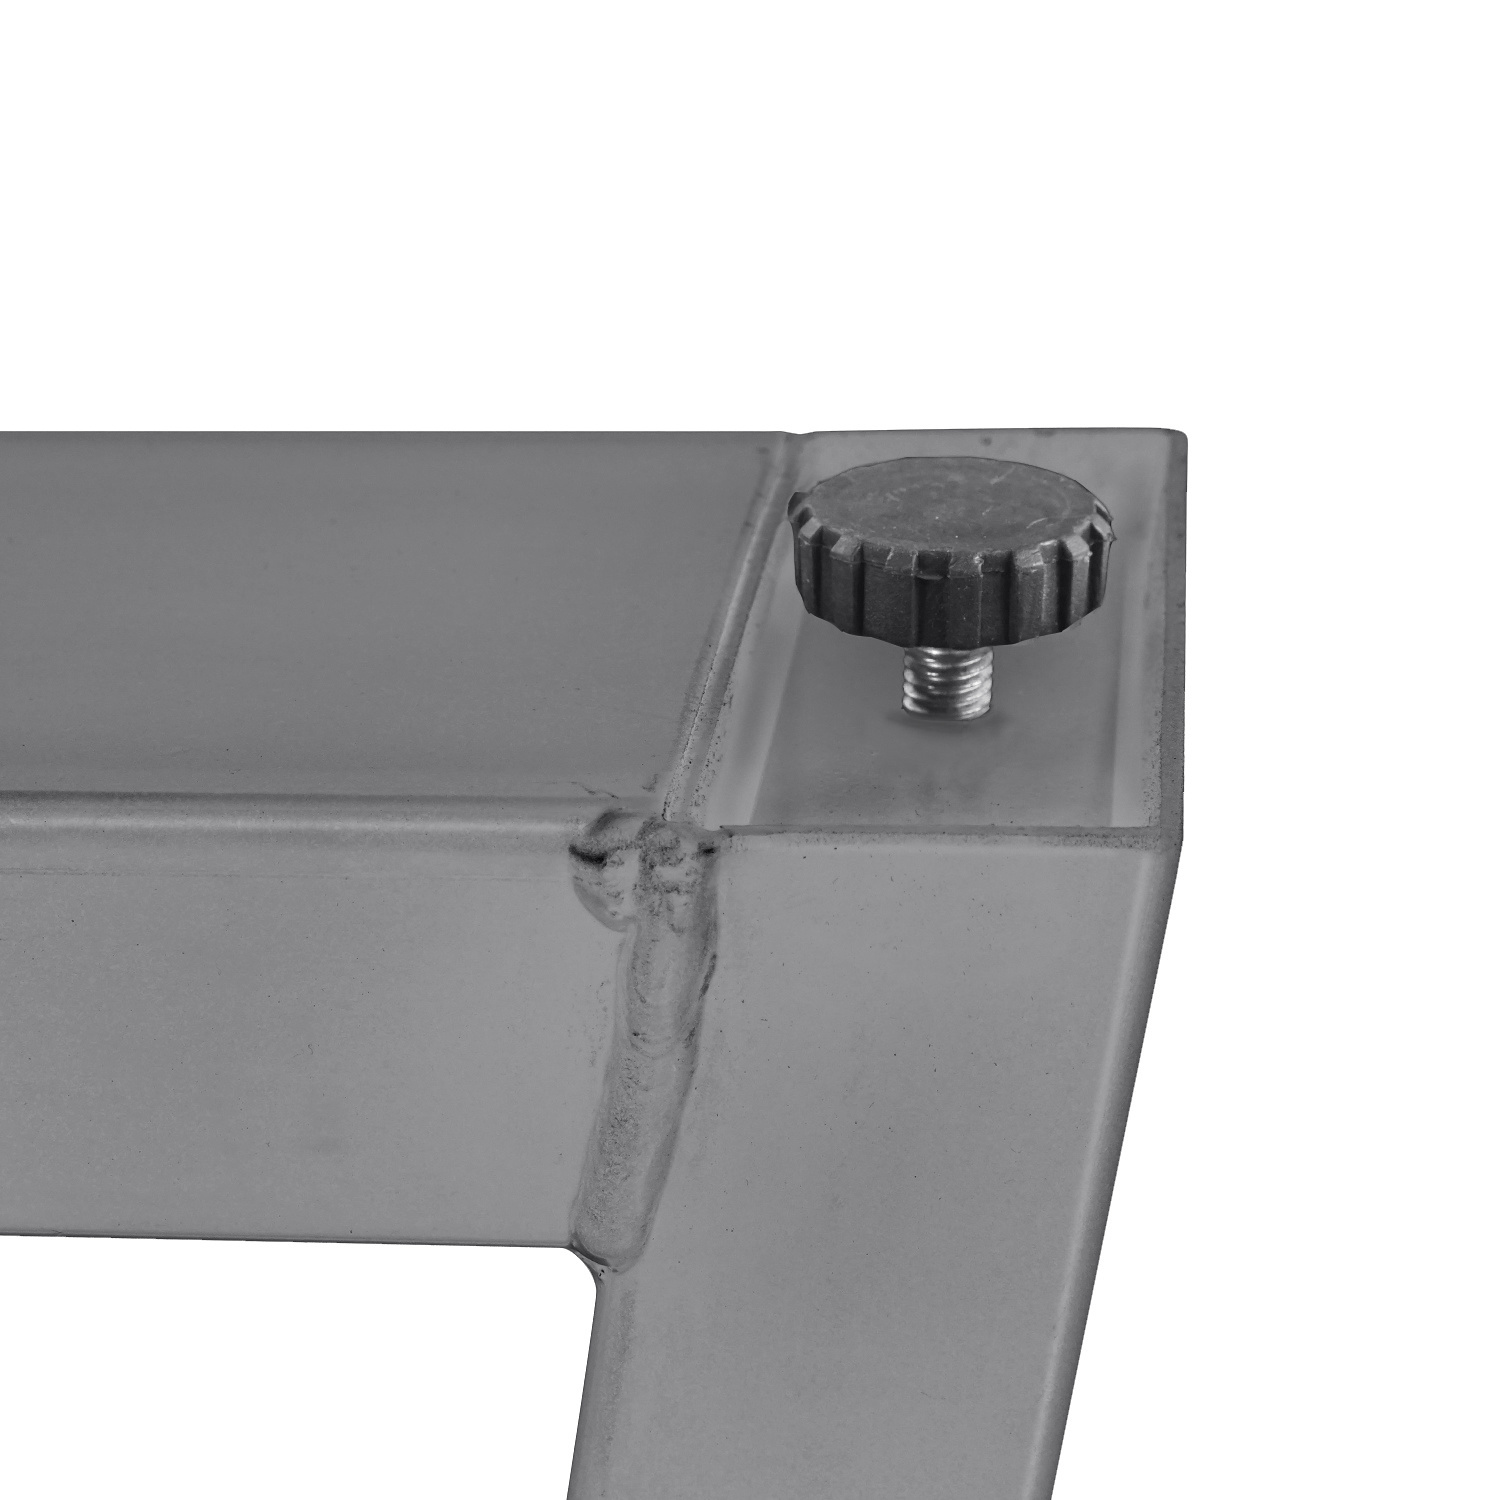  Tischbeine Trapez Edelstahl elegant SET (2 Stück) - 10x4 cm - 78-94 cm breit - 72 cm hoch - Trapez-Form Tischkufen / Tischgestell